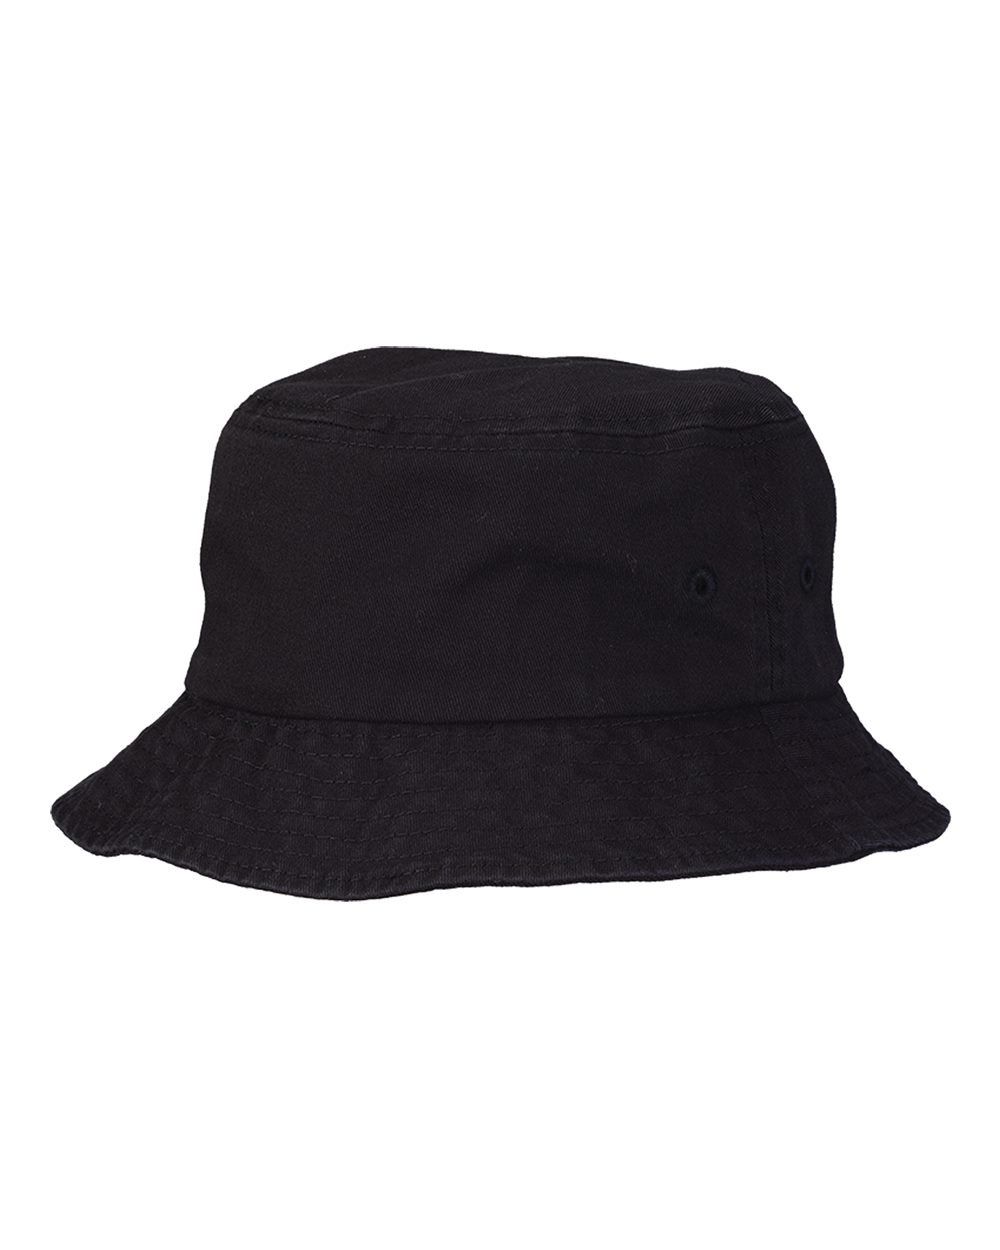 Deluxe Black Fisherman Hat